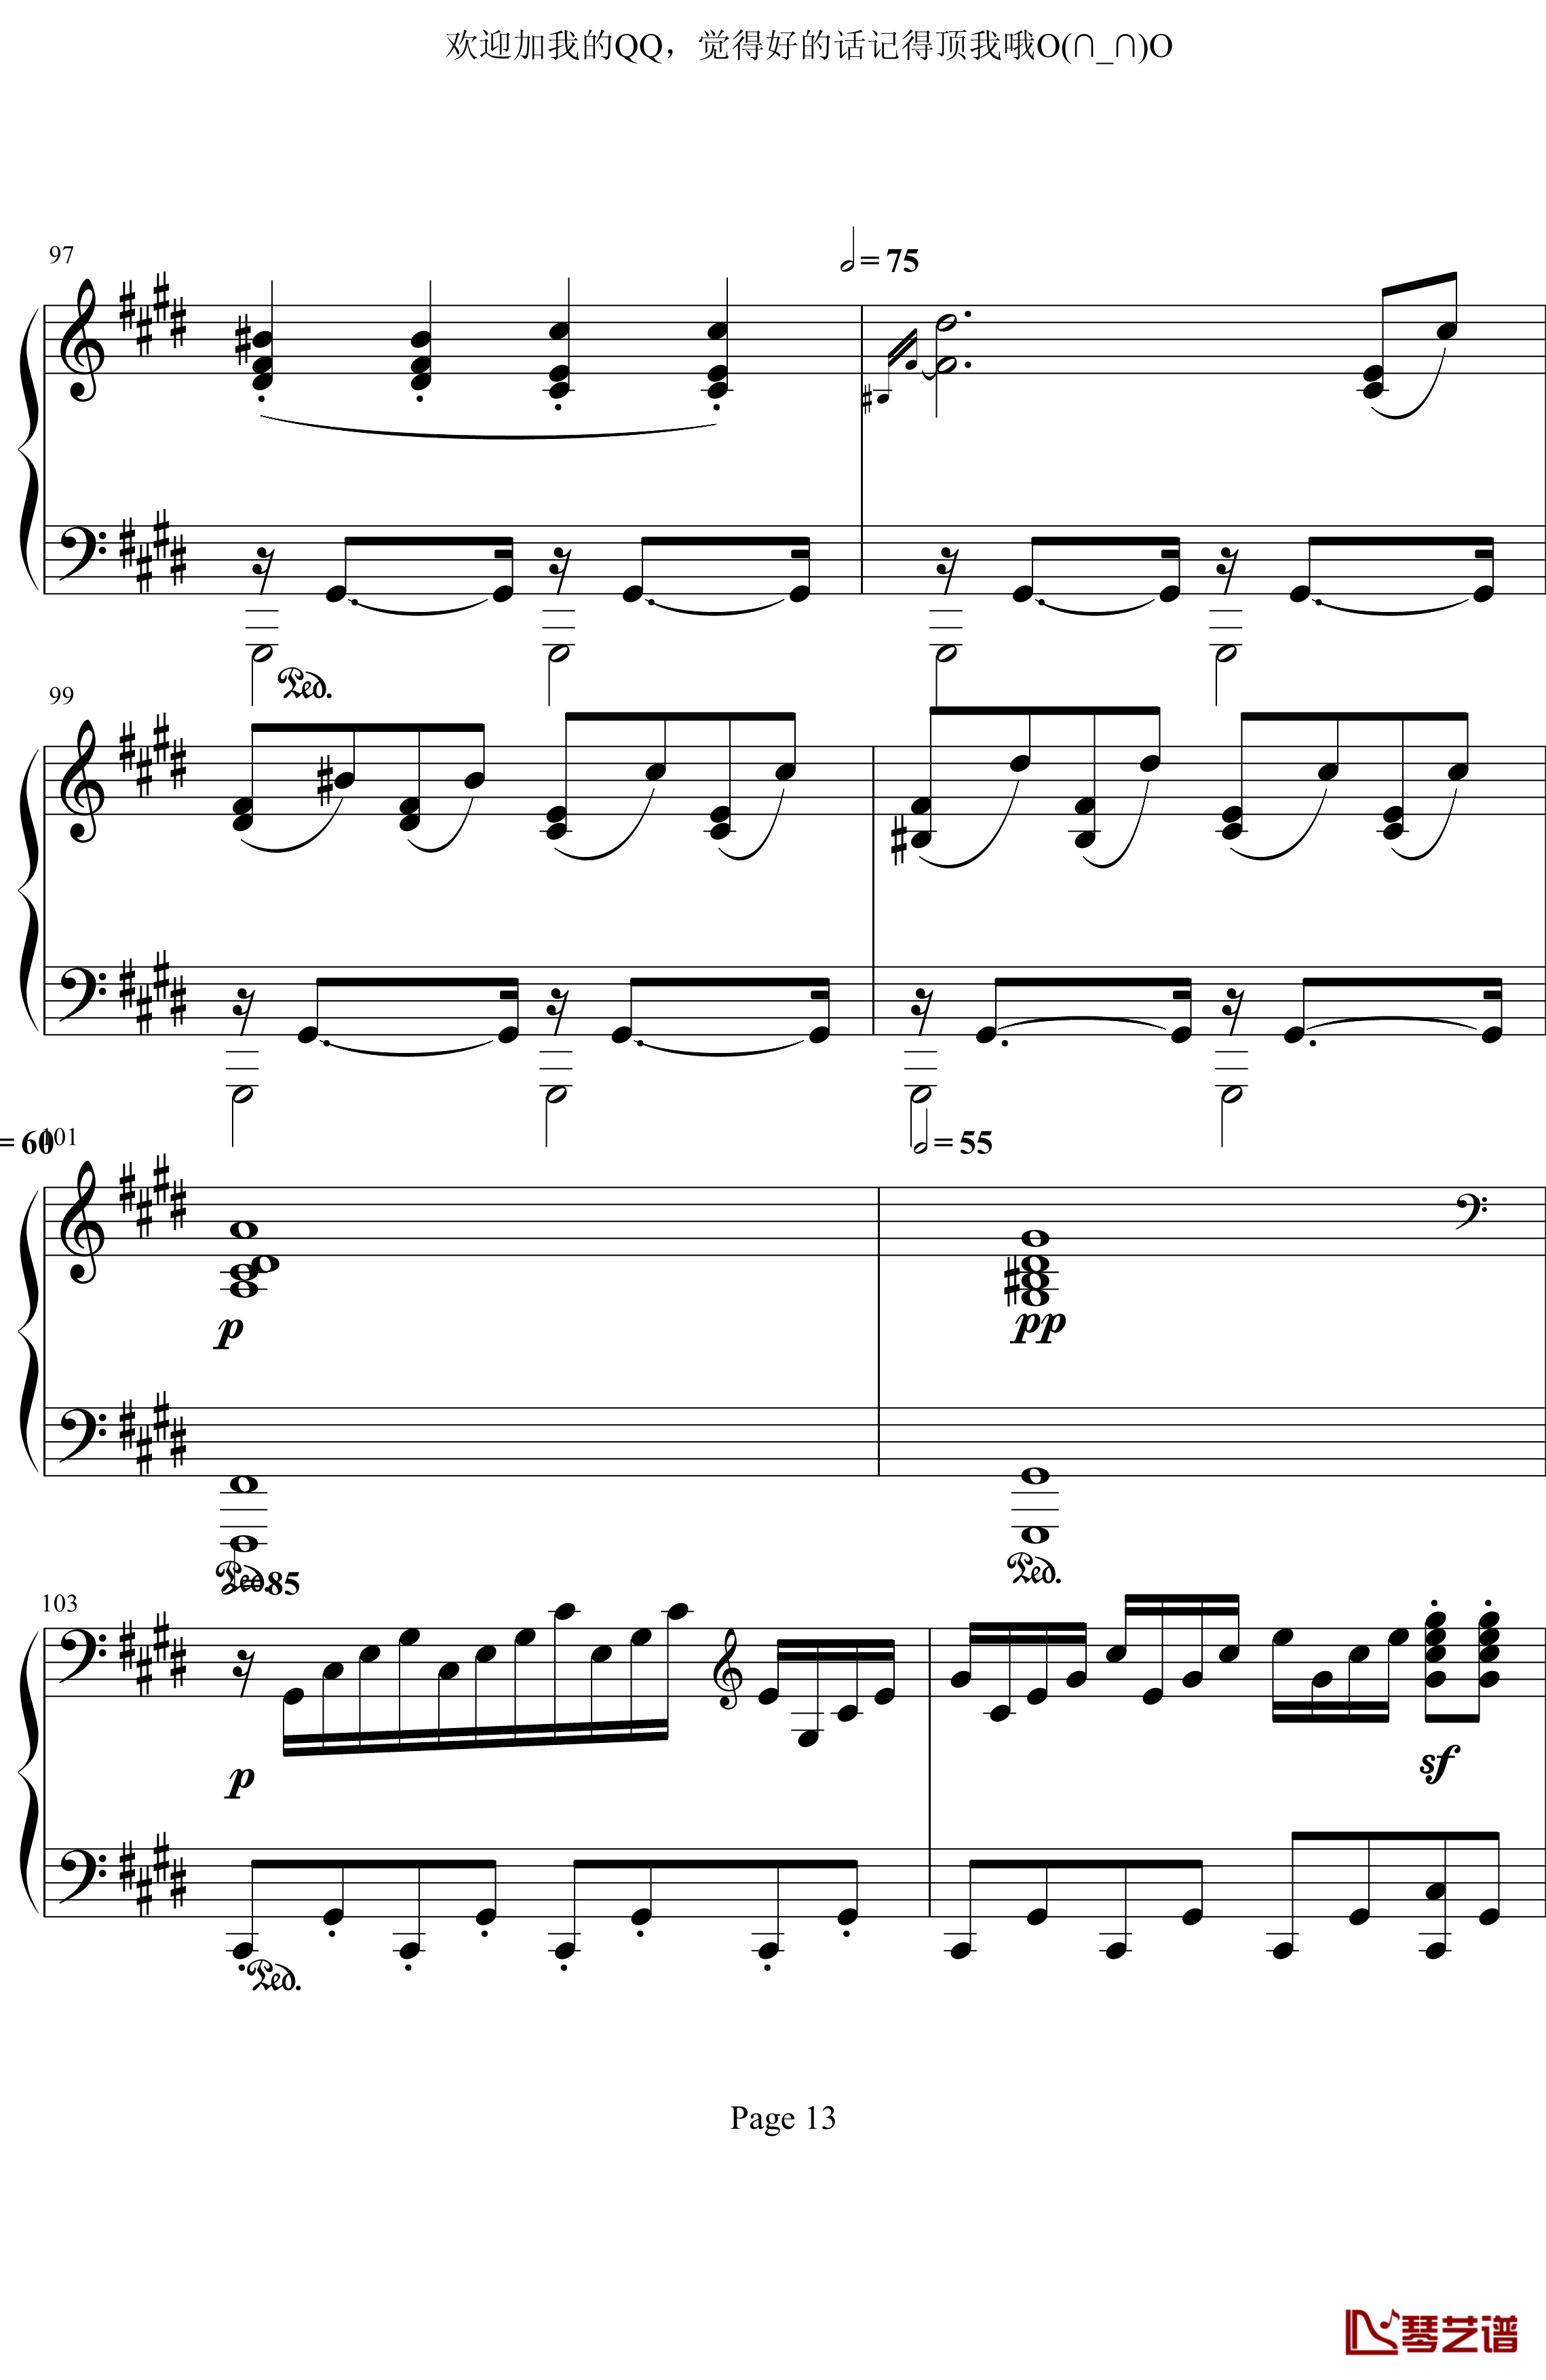 月光奏鸣曲第三乐章钢琴谱-贝多芬-beethoven13